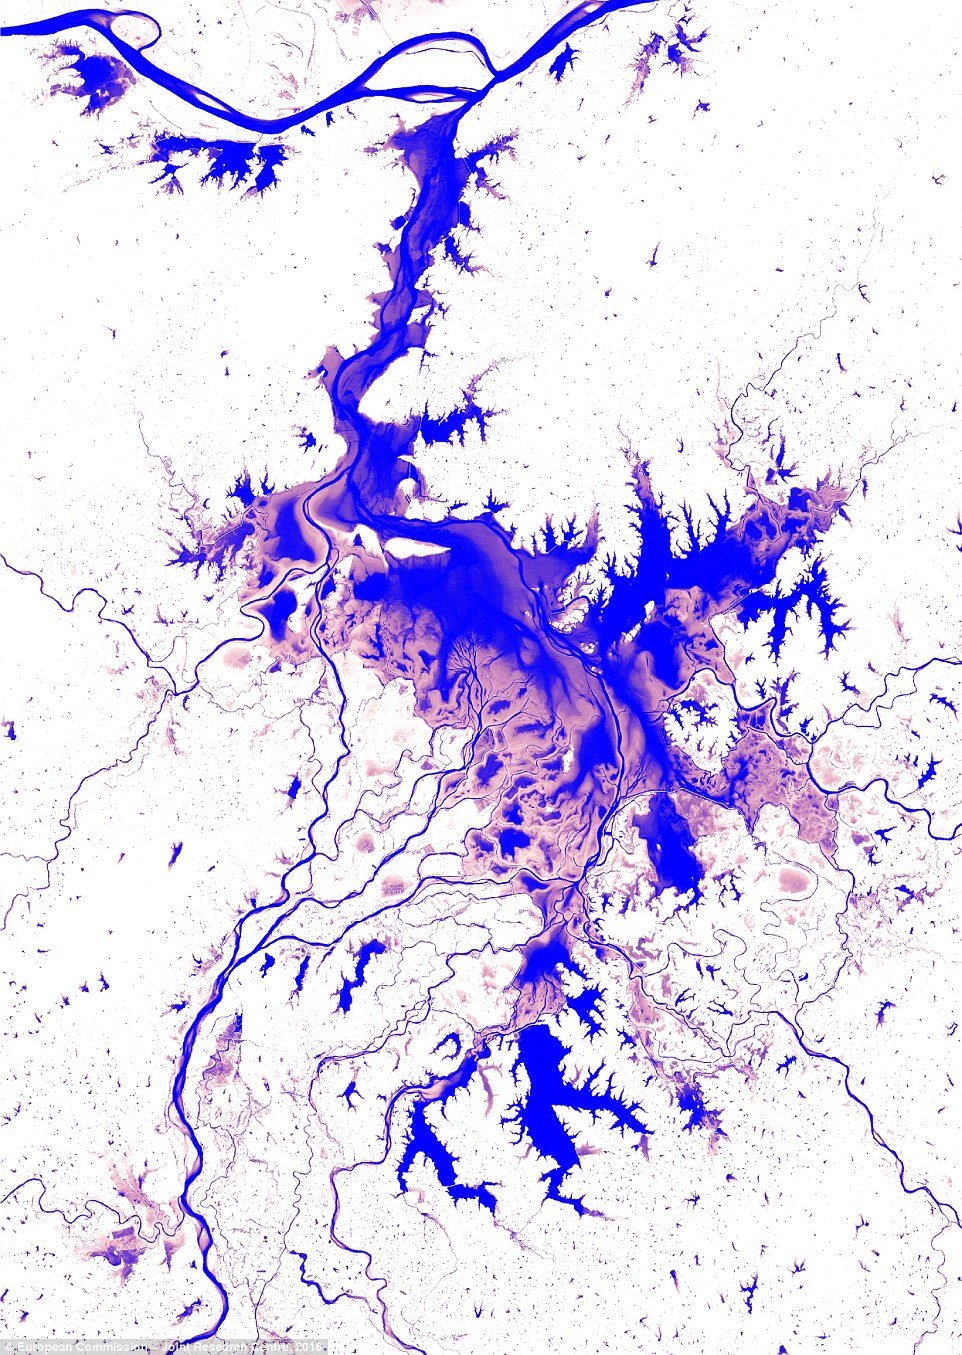 Hărți uluitoare care arată ce s-a întâmplat cu întinderile de apă de pe suprafața Pământului, în ultimii 32 de ani